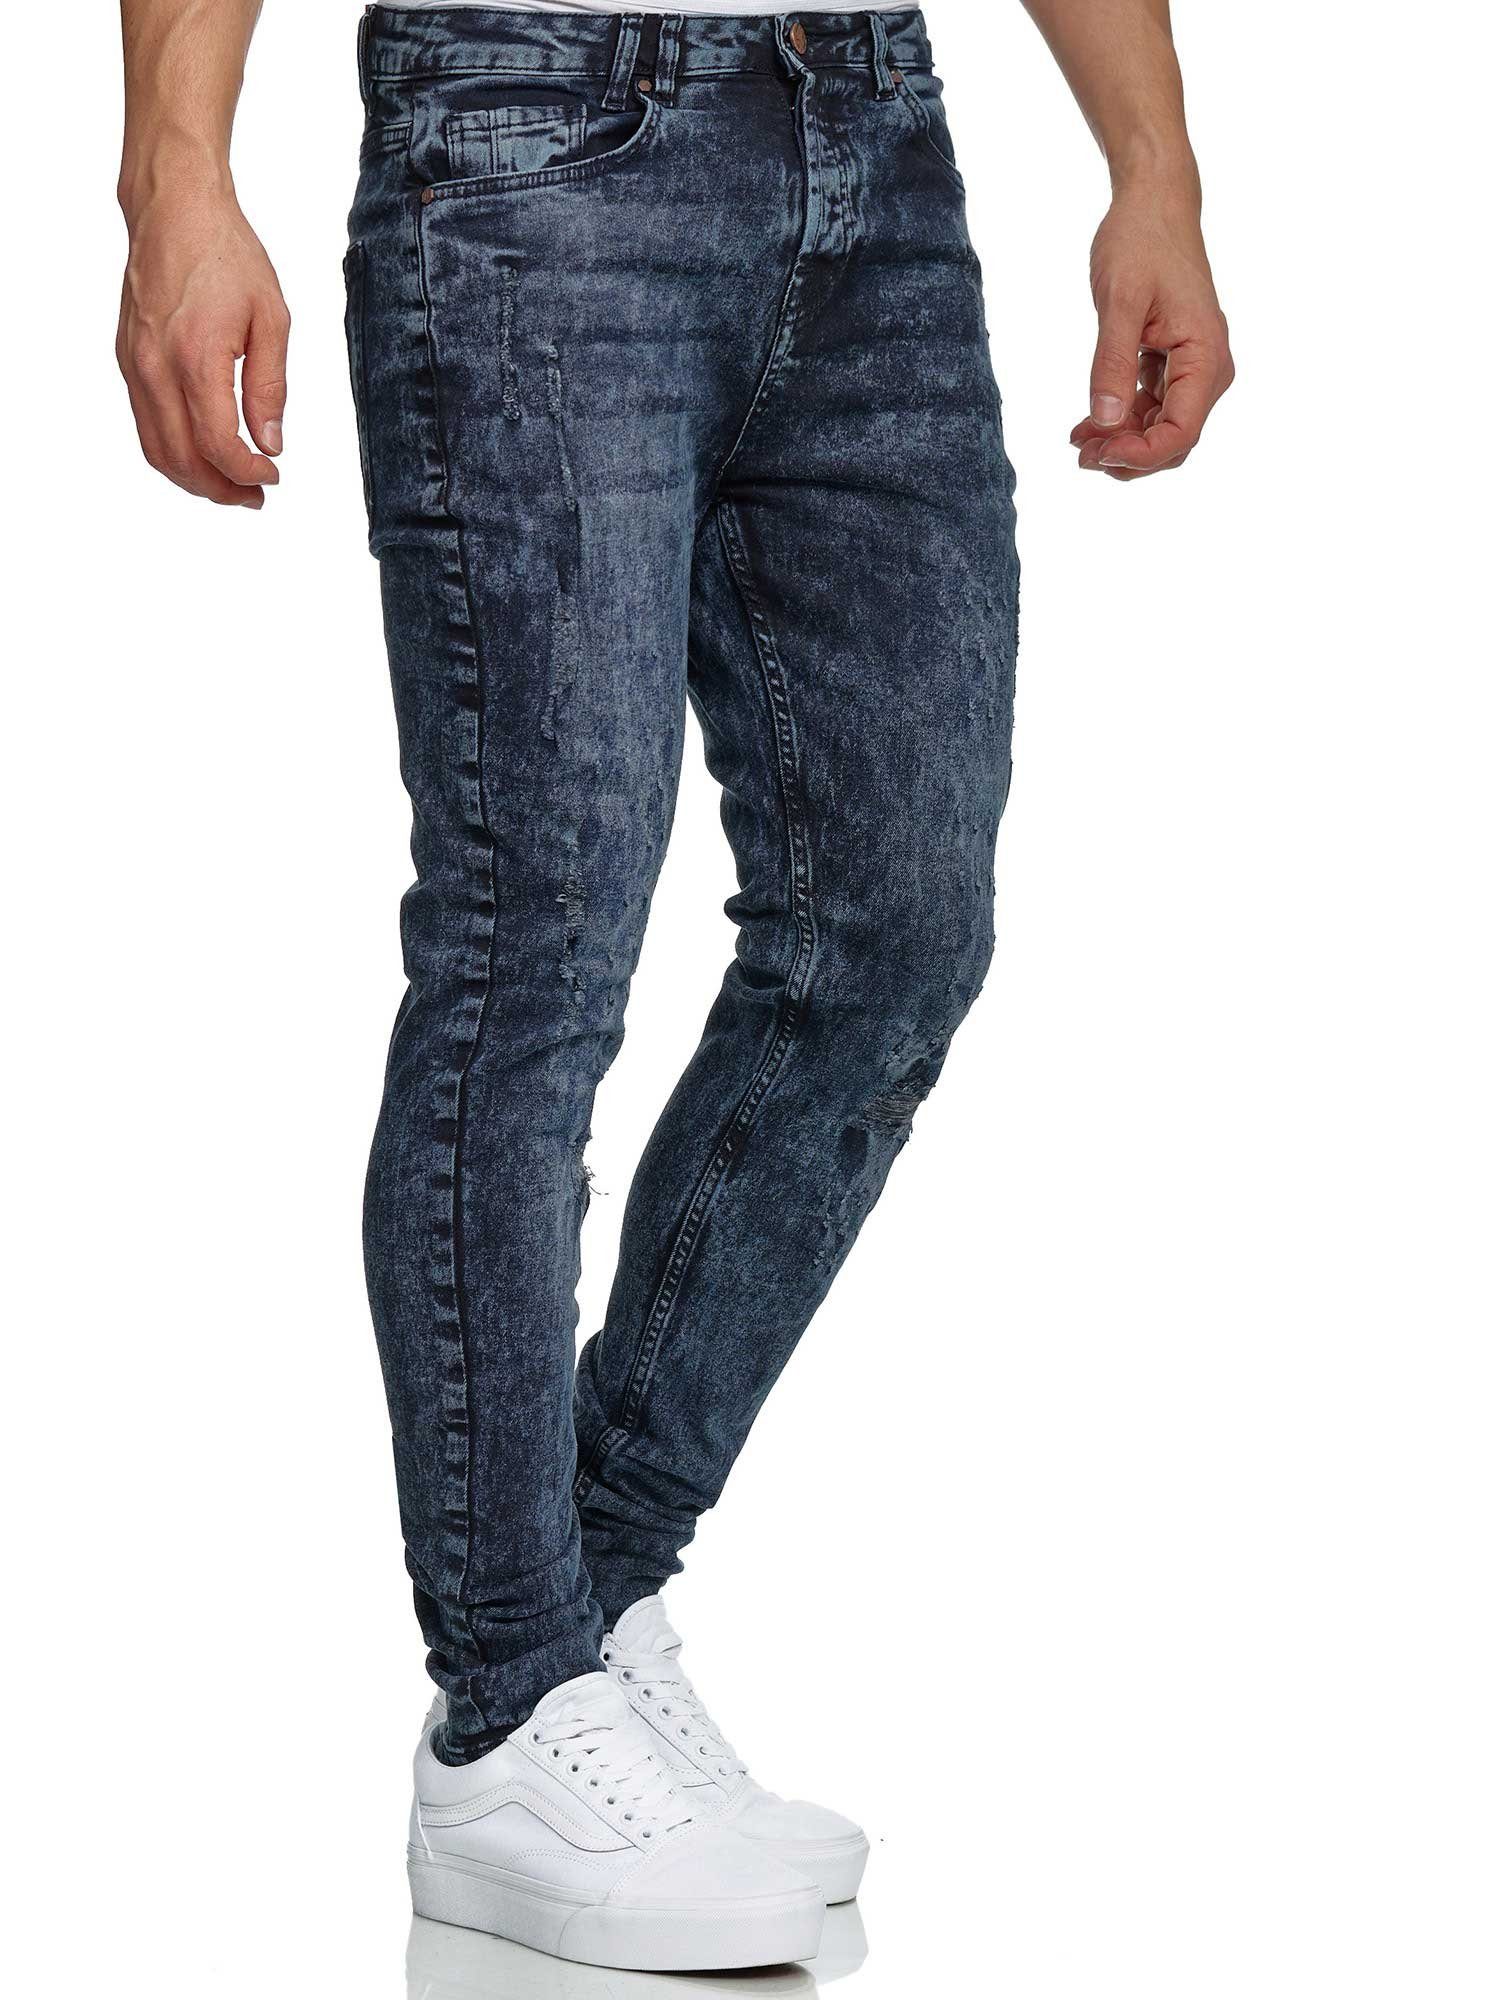 Tazzio Skinny-fit-Jeans 17516 im Destroyed-Look blau